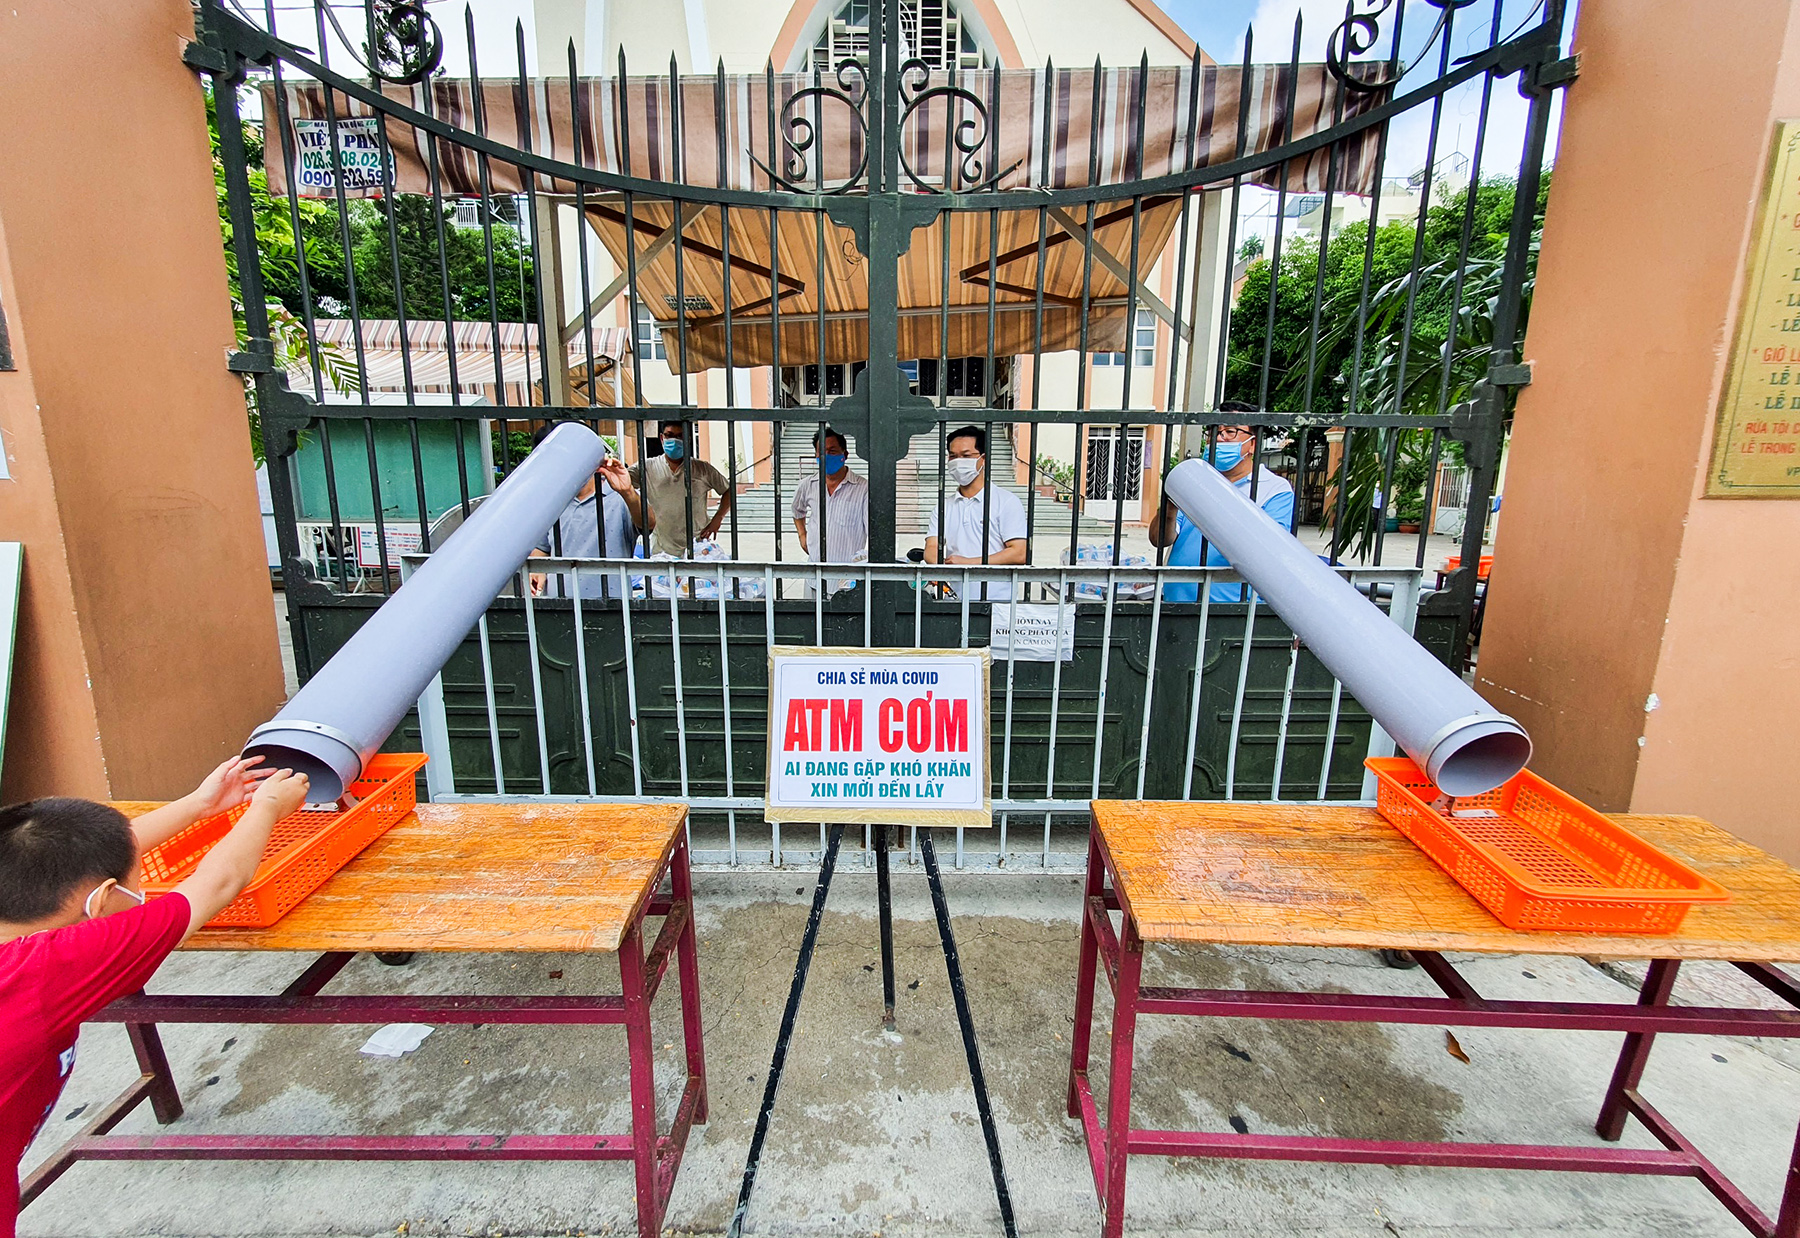 Khoảng 1 tuần nay, nhà thờ Tân Sa Chậu (đường Lê Văn Sỹ, quận Tân Bình) lắp đặt mô hình máng trượt bằng ống để phát các phần cơm, bánh mì, gạo… phục vụ miễn phí cho người dân trong mùa dịch COVID-19.